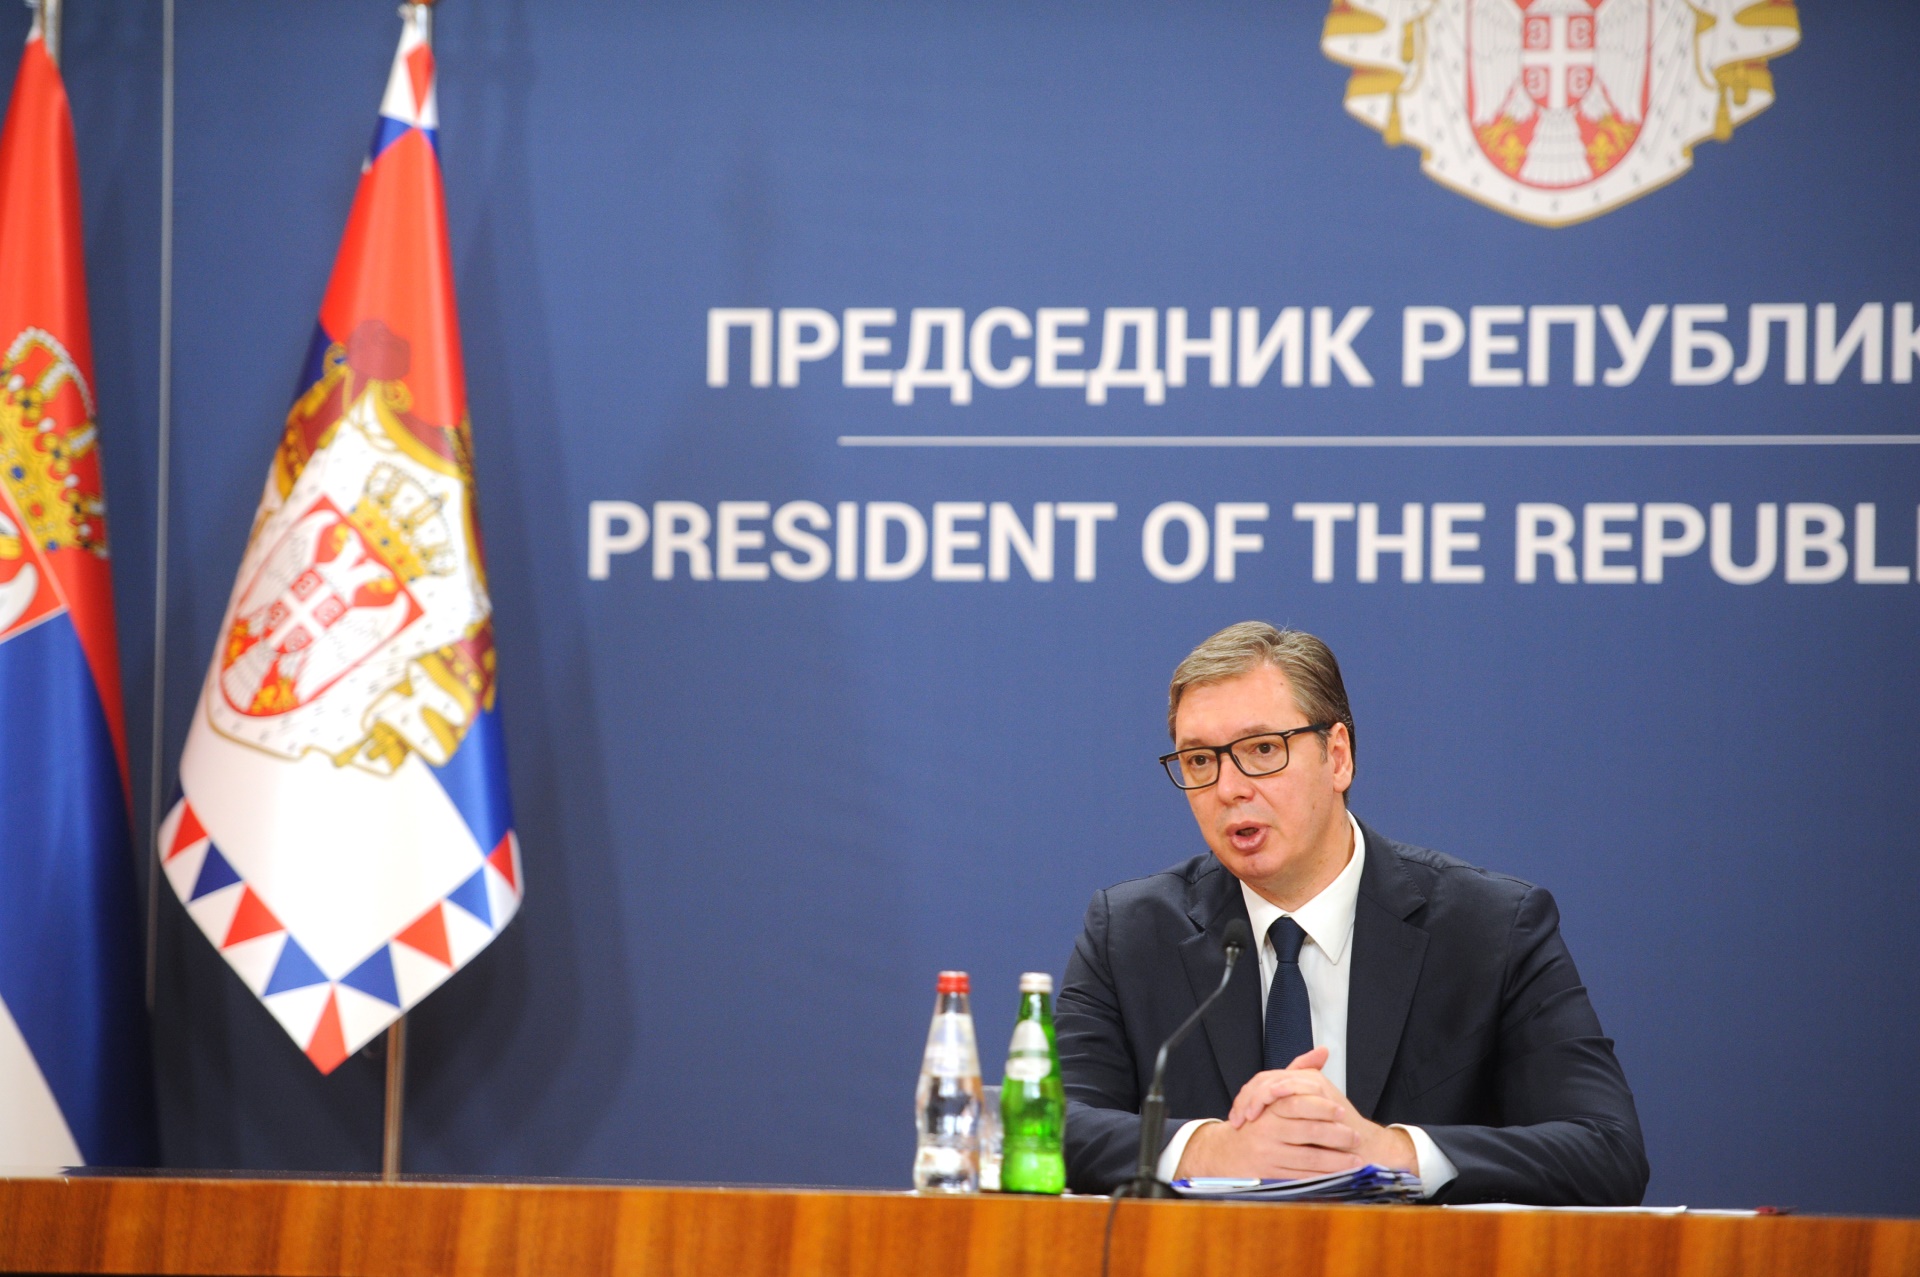 Председник Републике Србије Александар Вучић изјавио је, после седнице Савета за националну безбедност, да се разговарало о тежини ситуације у којој се Србија данас налази.